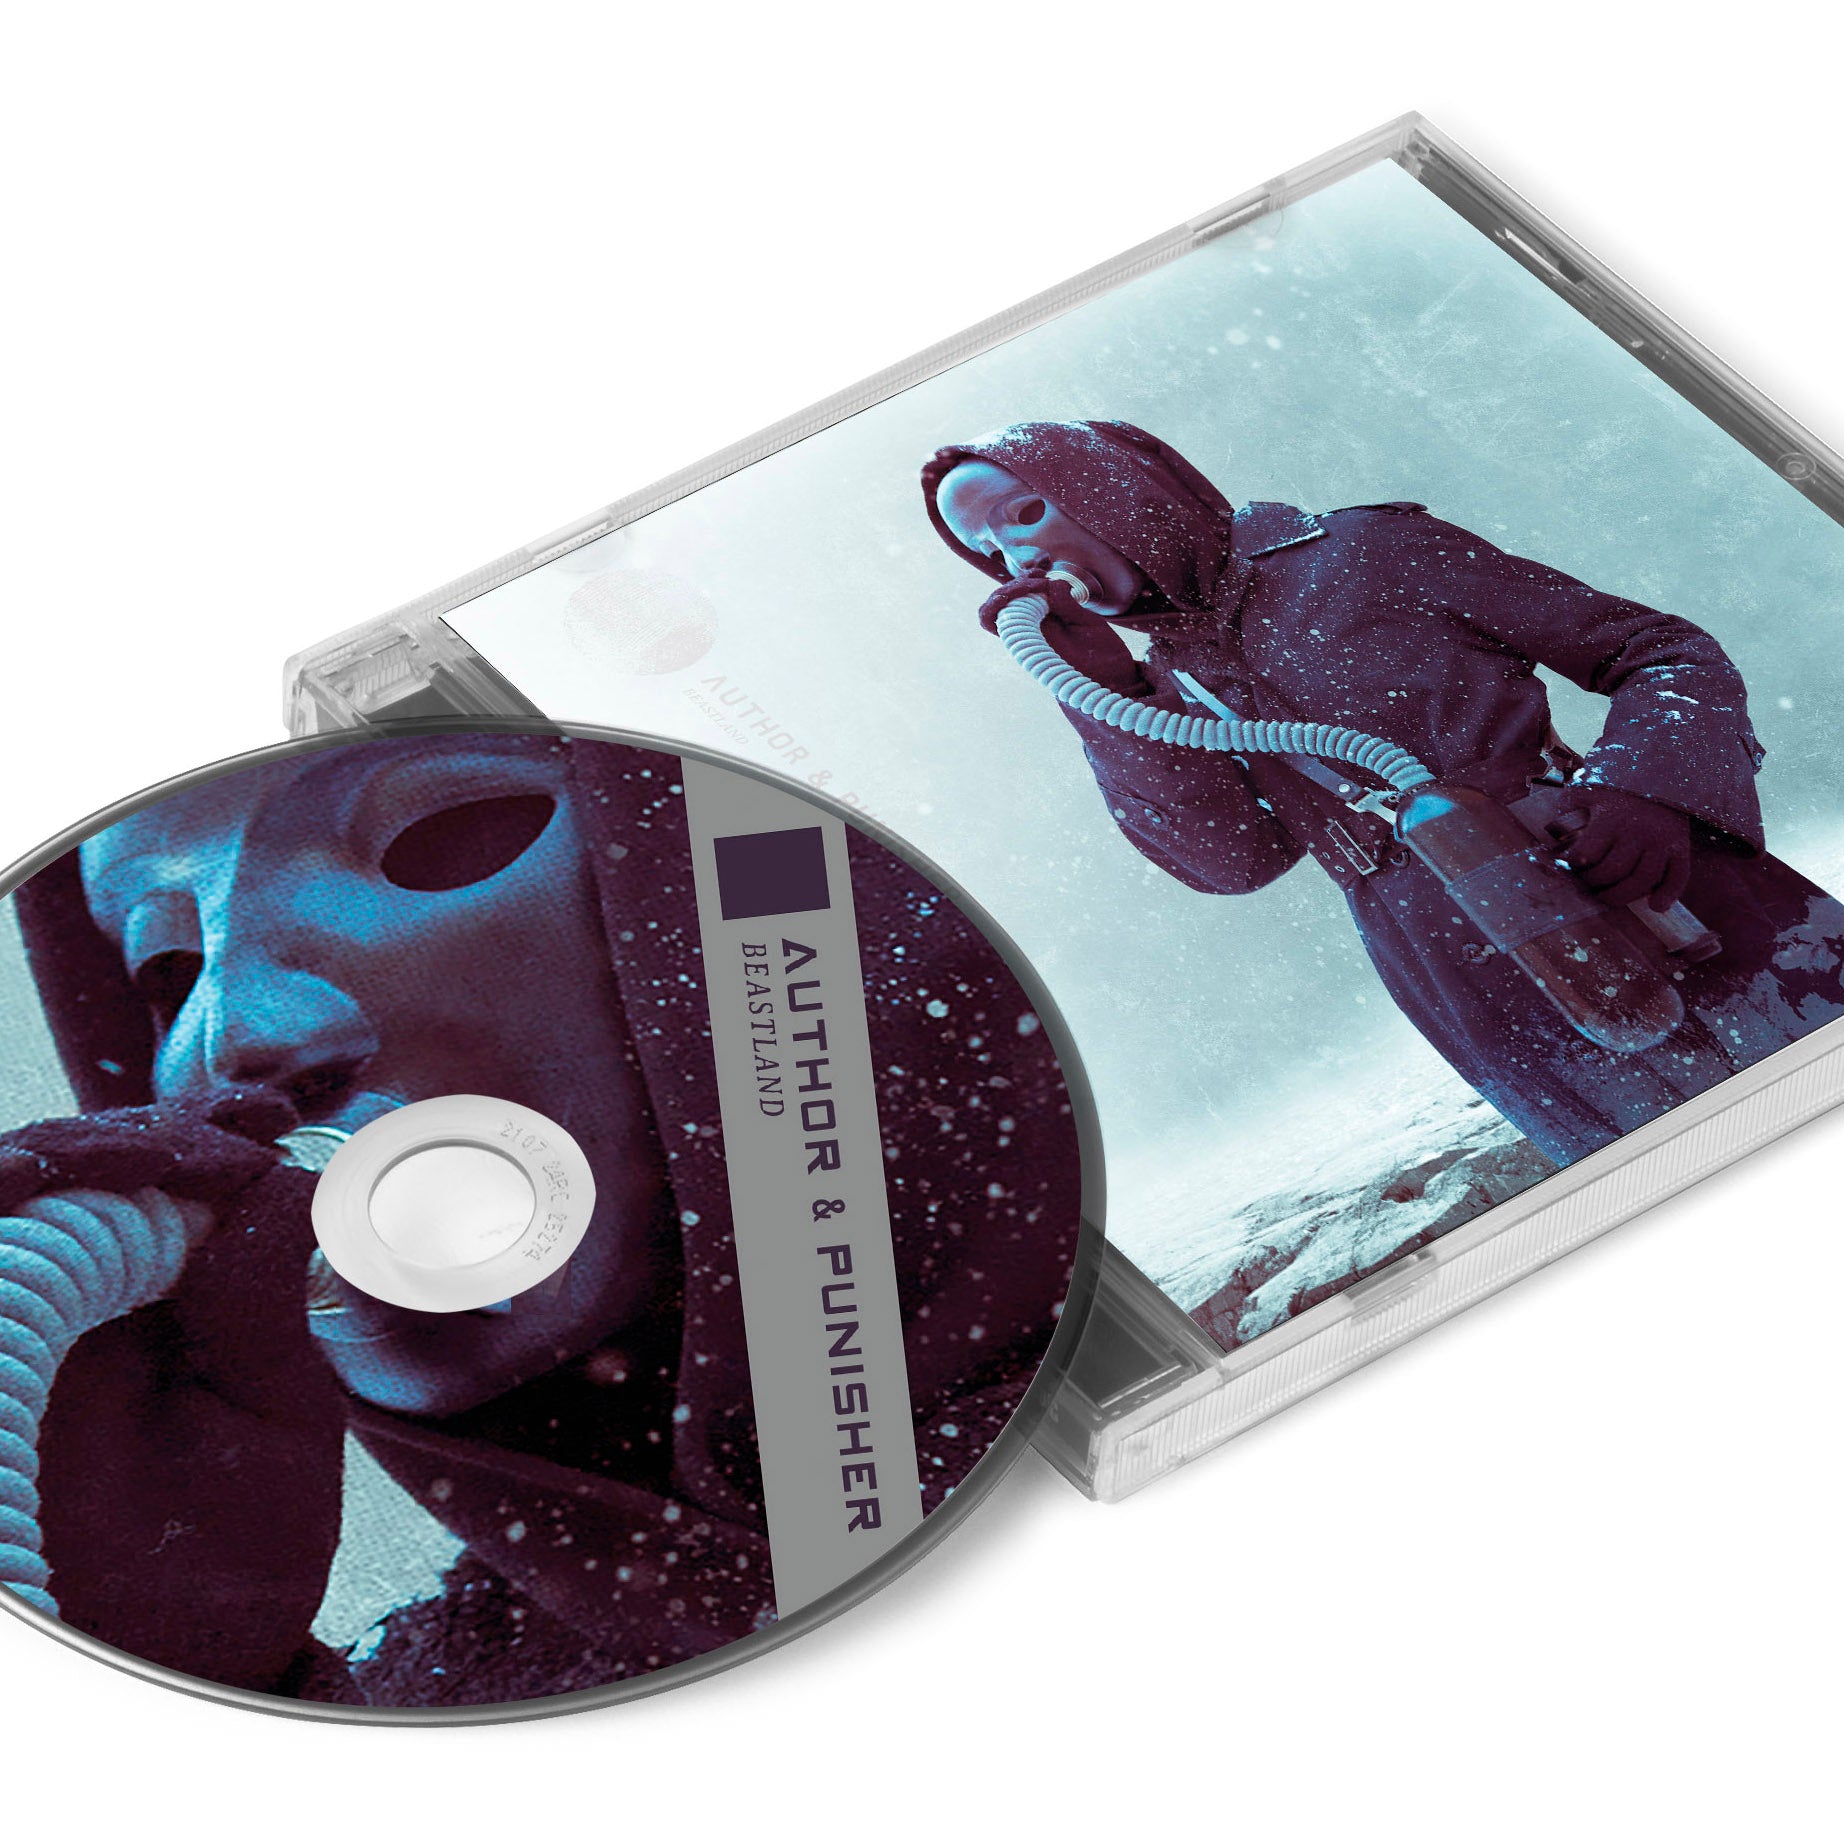 Author & Punisher "Beastland" CD